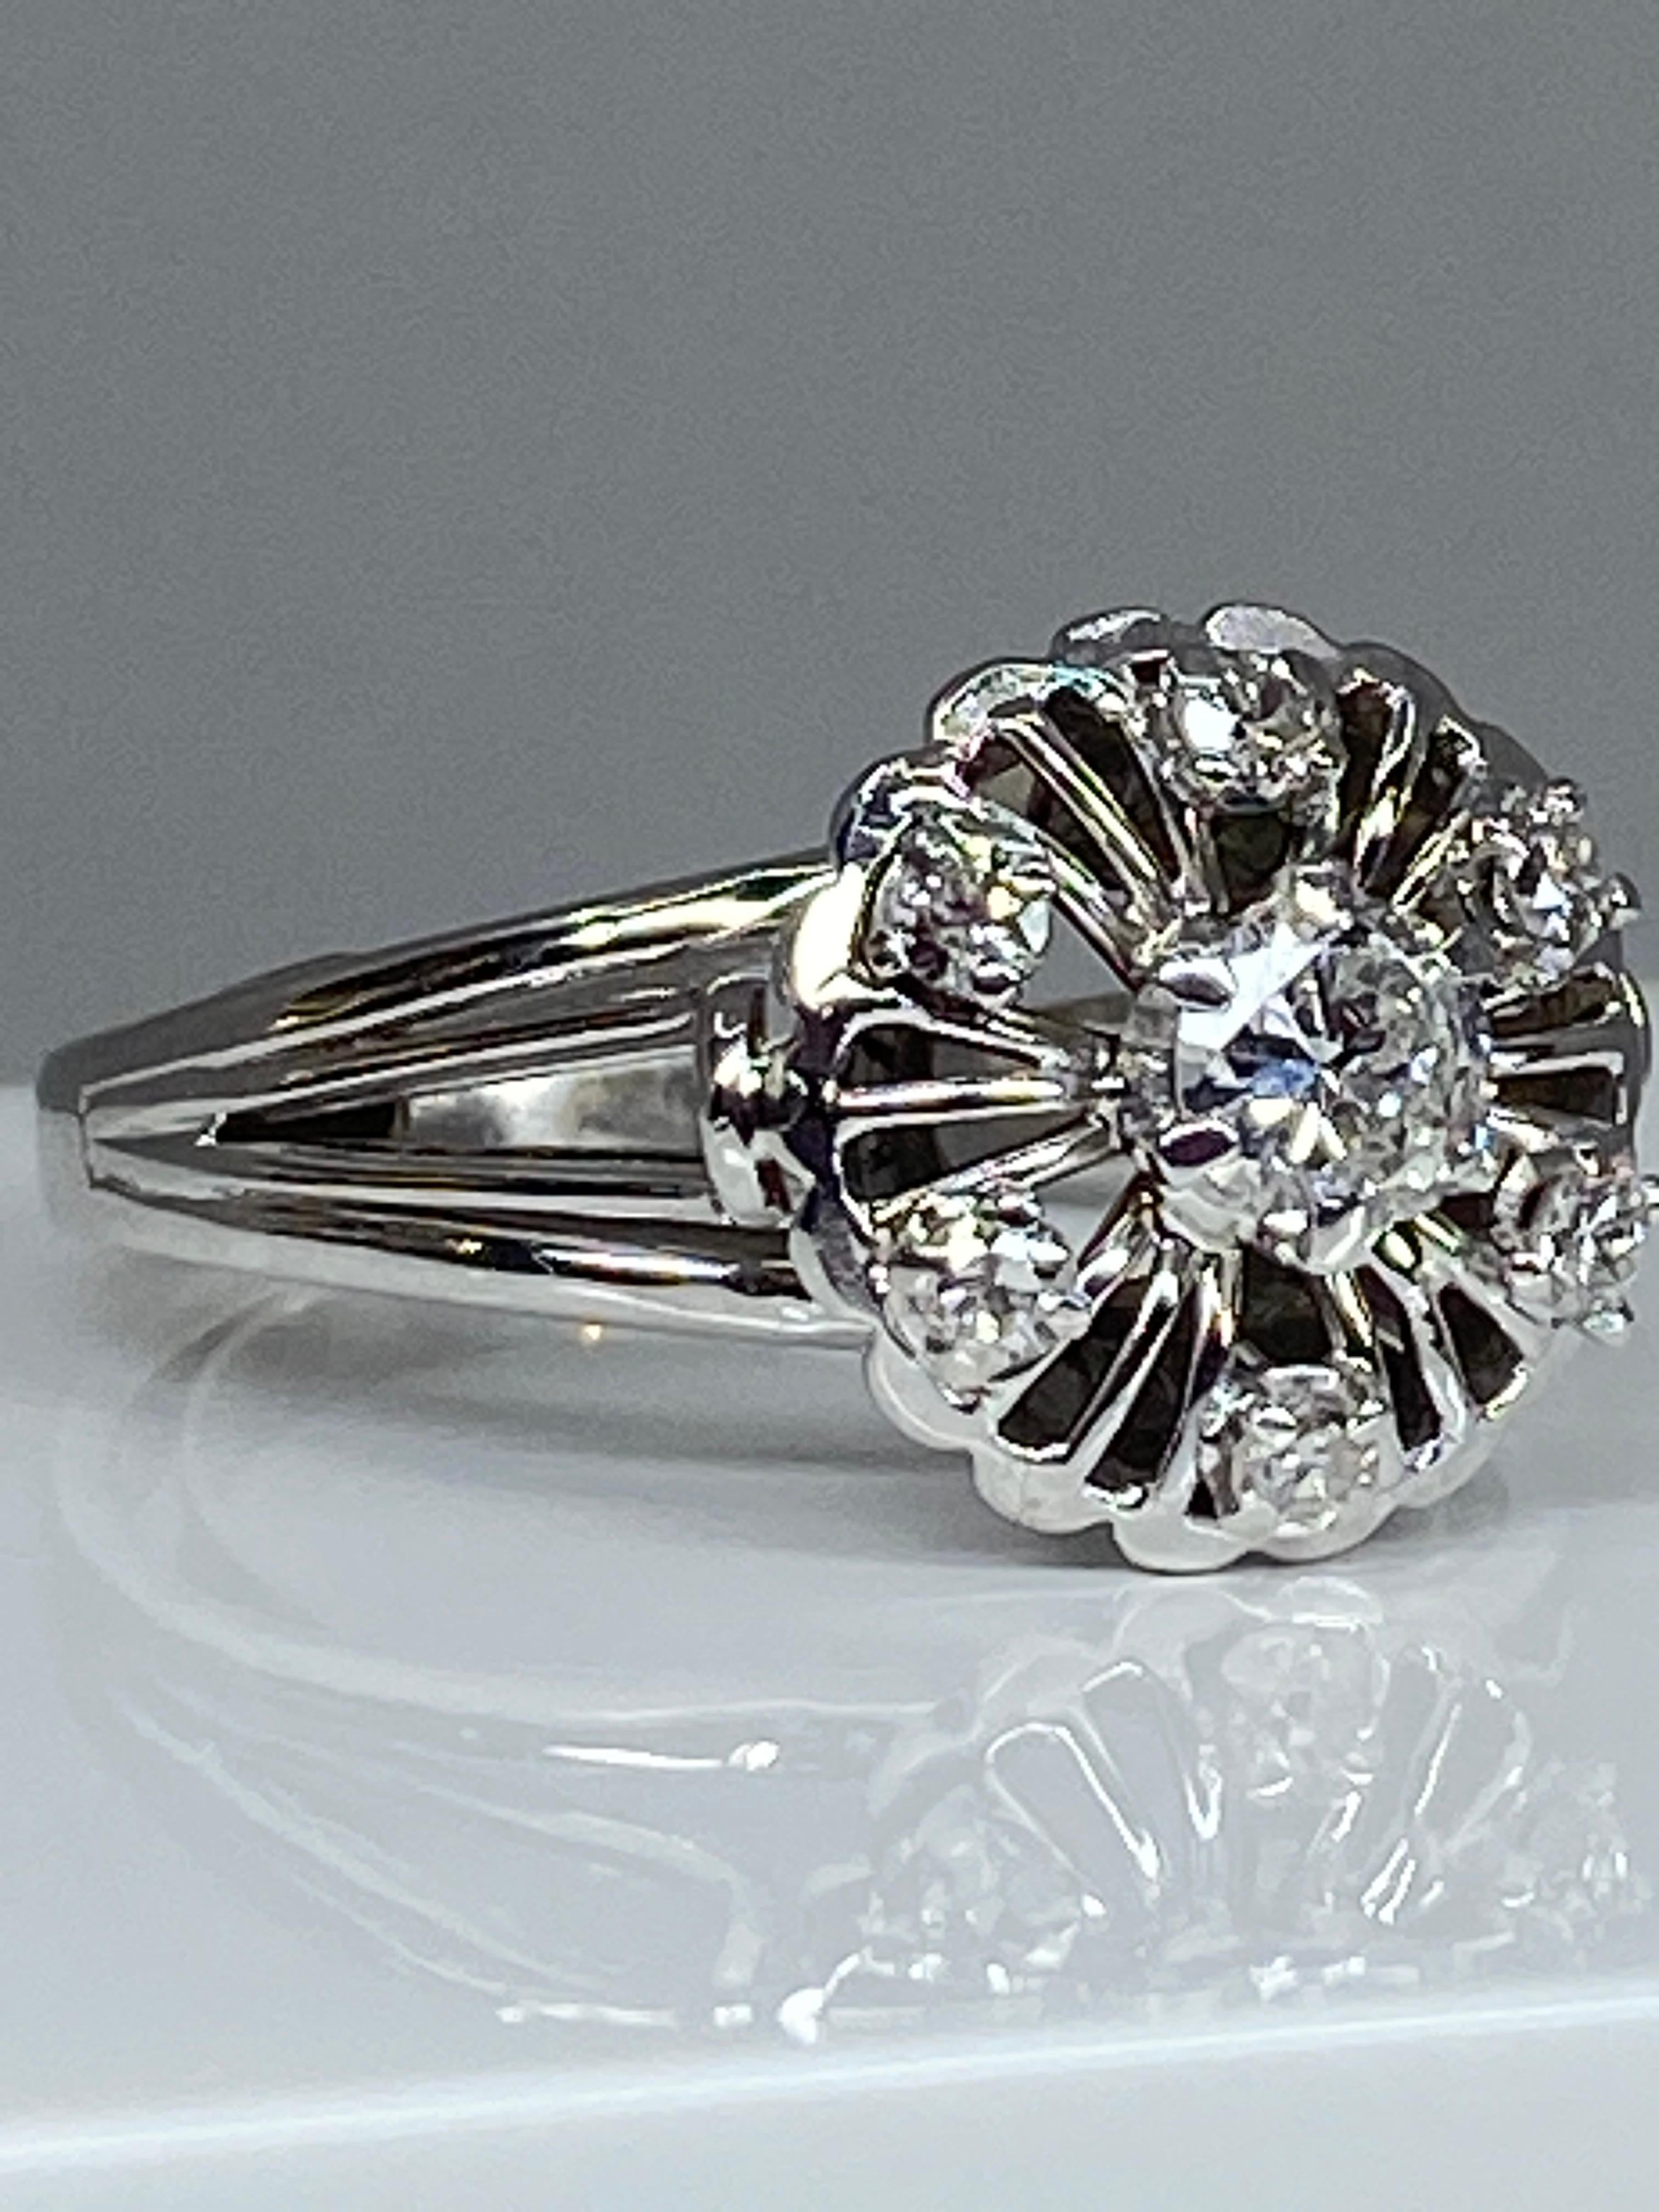 Ravissante bague de fiançailles en or 18 carats de forme fleur stylisée , ornée au centre d’un diamant de taille brillant pesant 0.25 carat environ, entouré de 6 diamants de taille brillant pesant 0.20 carat environ. L’ensemble est en serti griffes.